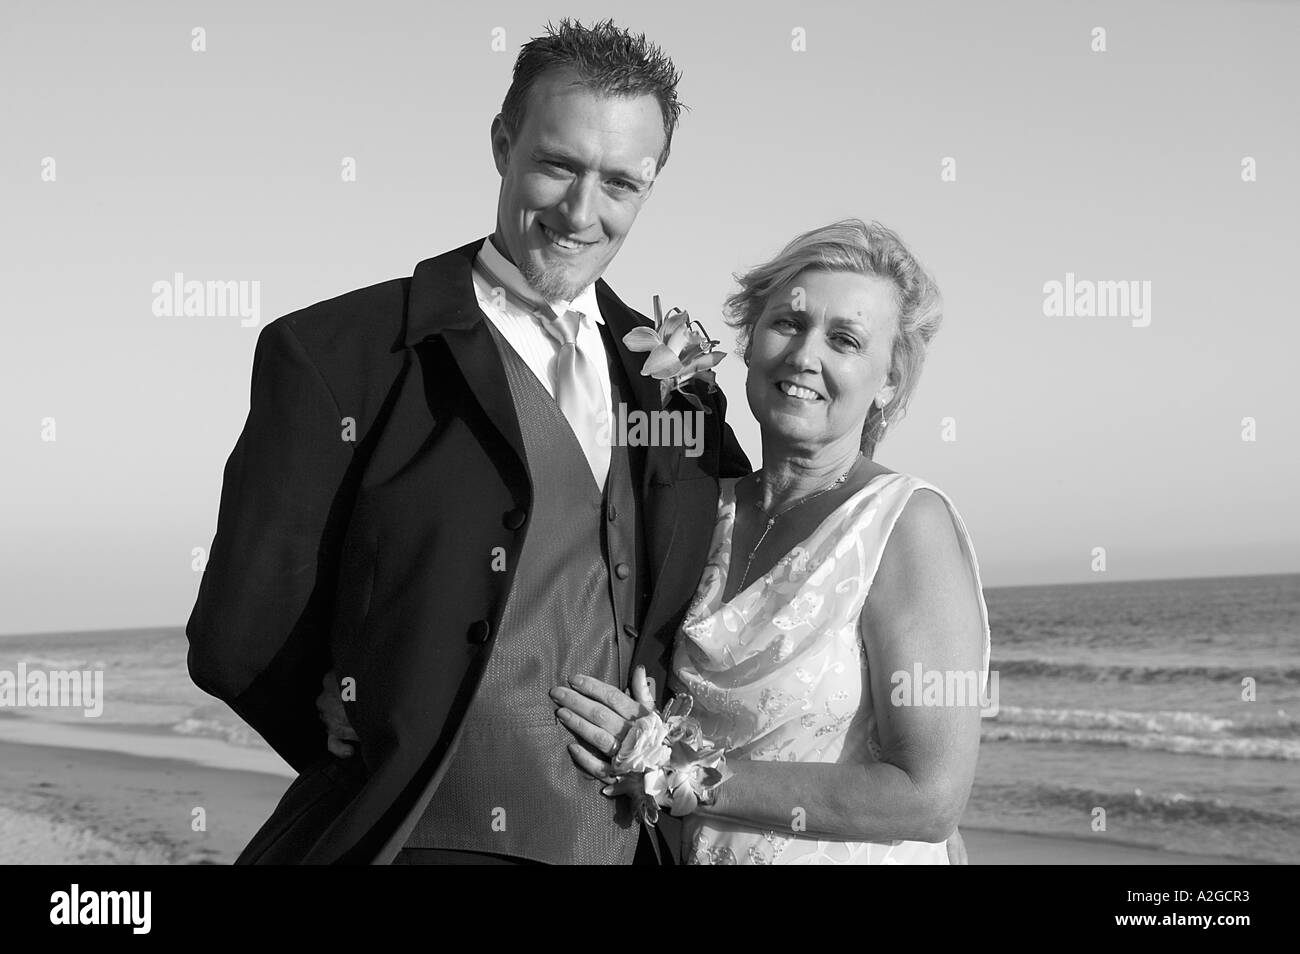 Ritratto in bianco e nero di groom con sua madre ad un matrimonio sulla spiaggia a Malibu, California Foto Stock